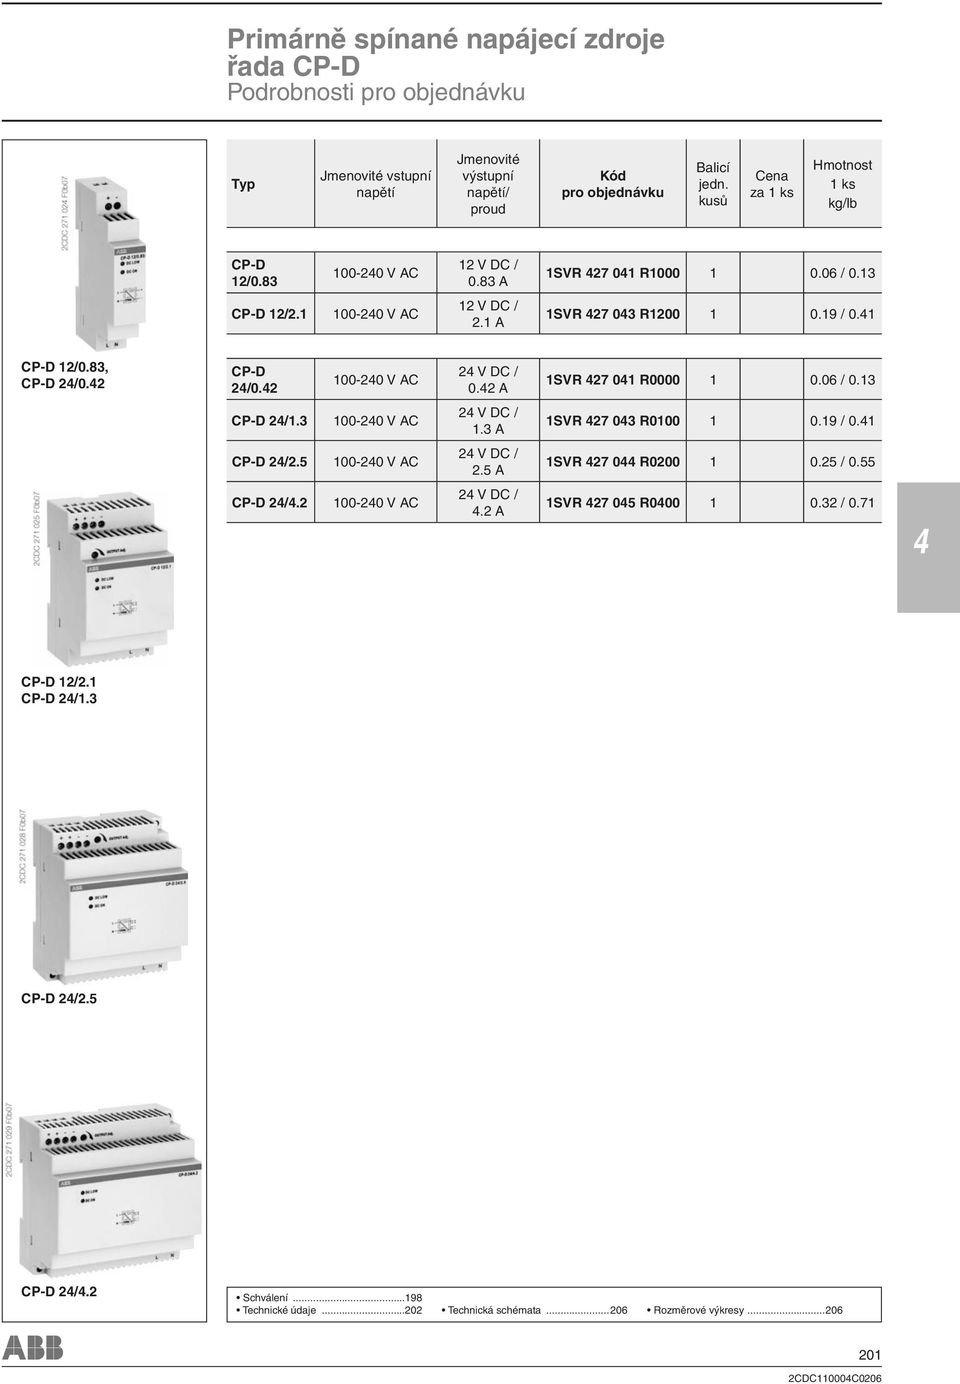 2 100-20 V AC 2 V DC / 0.2 A 1SVR 27 01 R0000 1 0.06 / 0.13 CP-D 2/1.3 100-20 V AC 2 V DC / 1.3 A 1SVR 27 03 R0100 1 0.19 / 0.1 CP-D 2/2.5 100-20 V AC 2 V DC / 2.